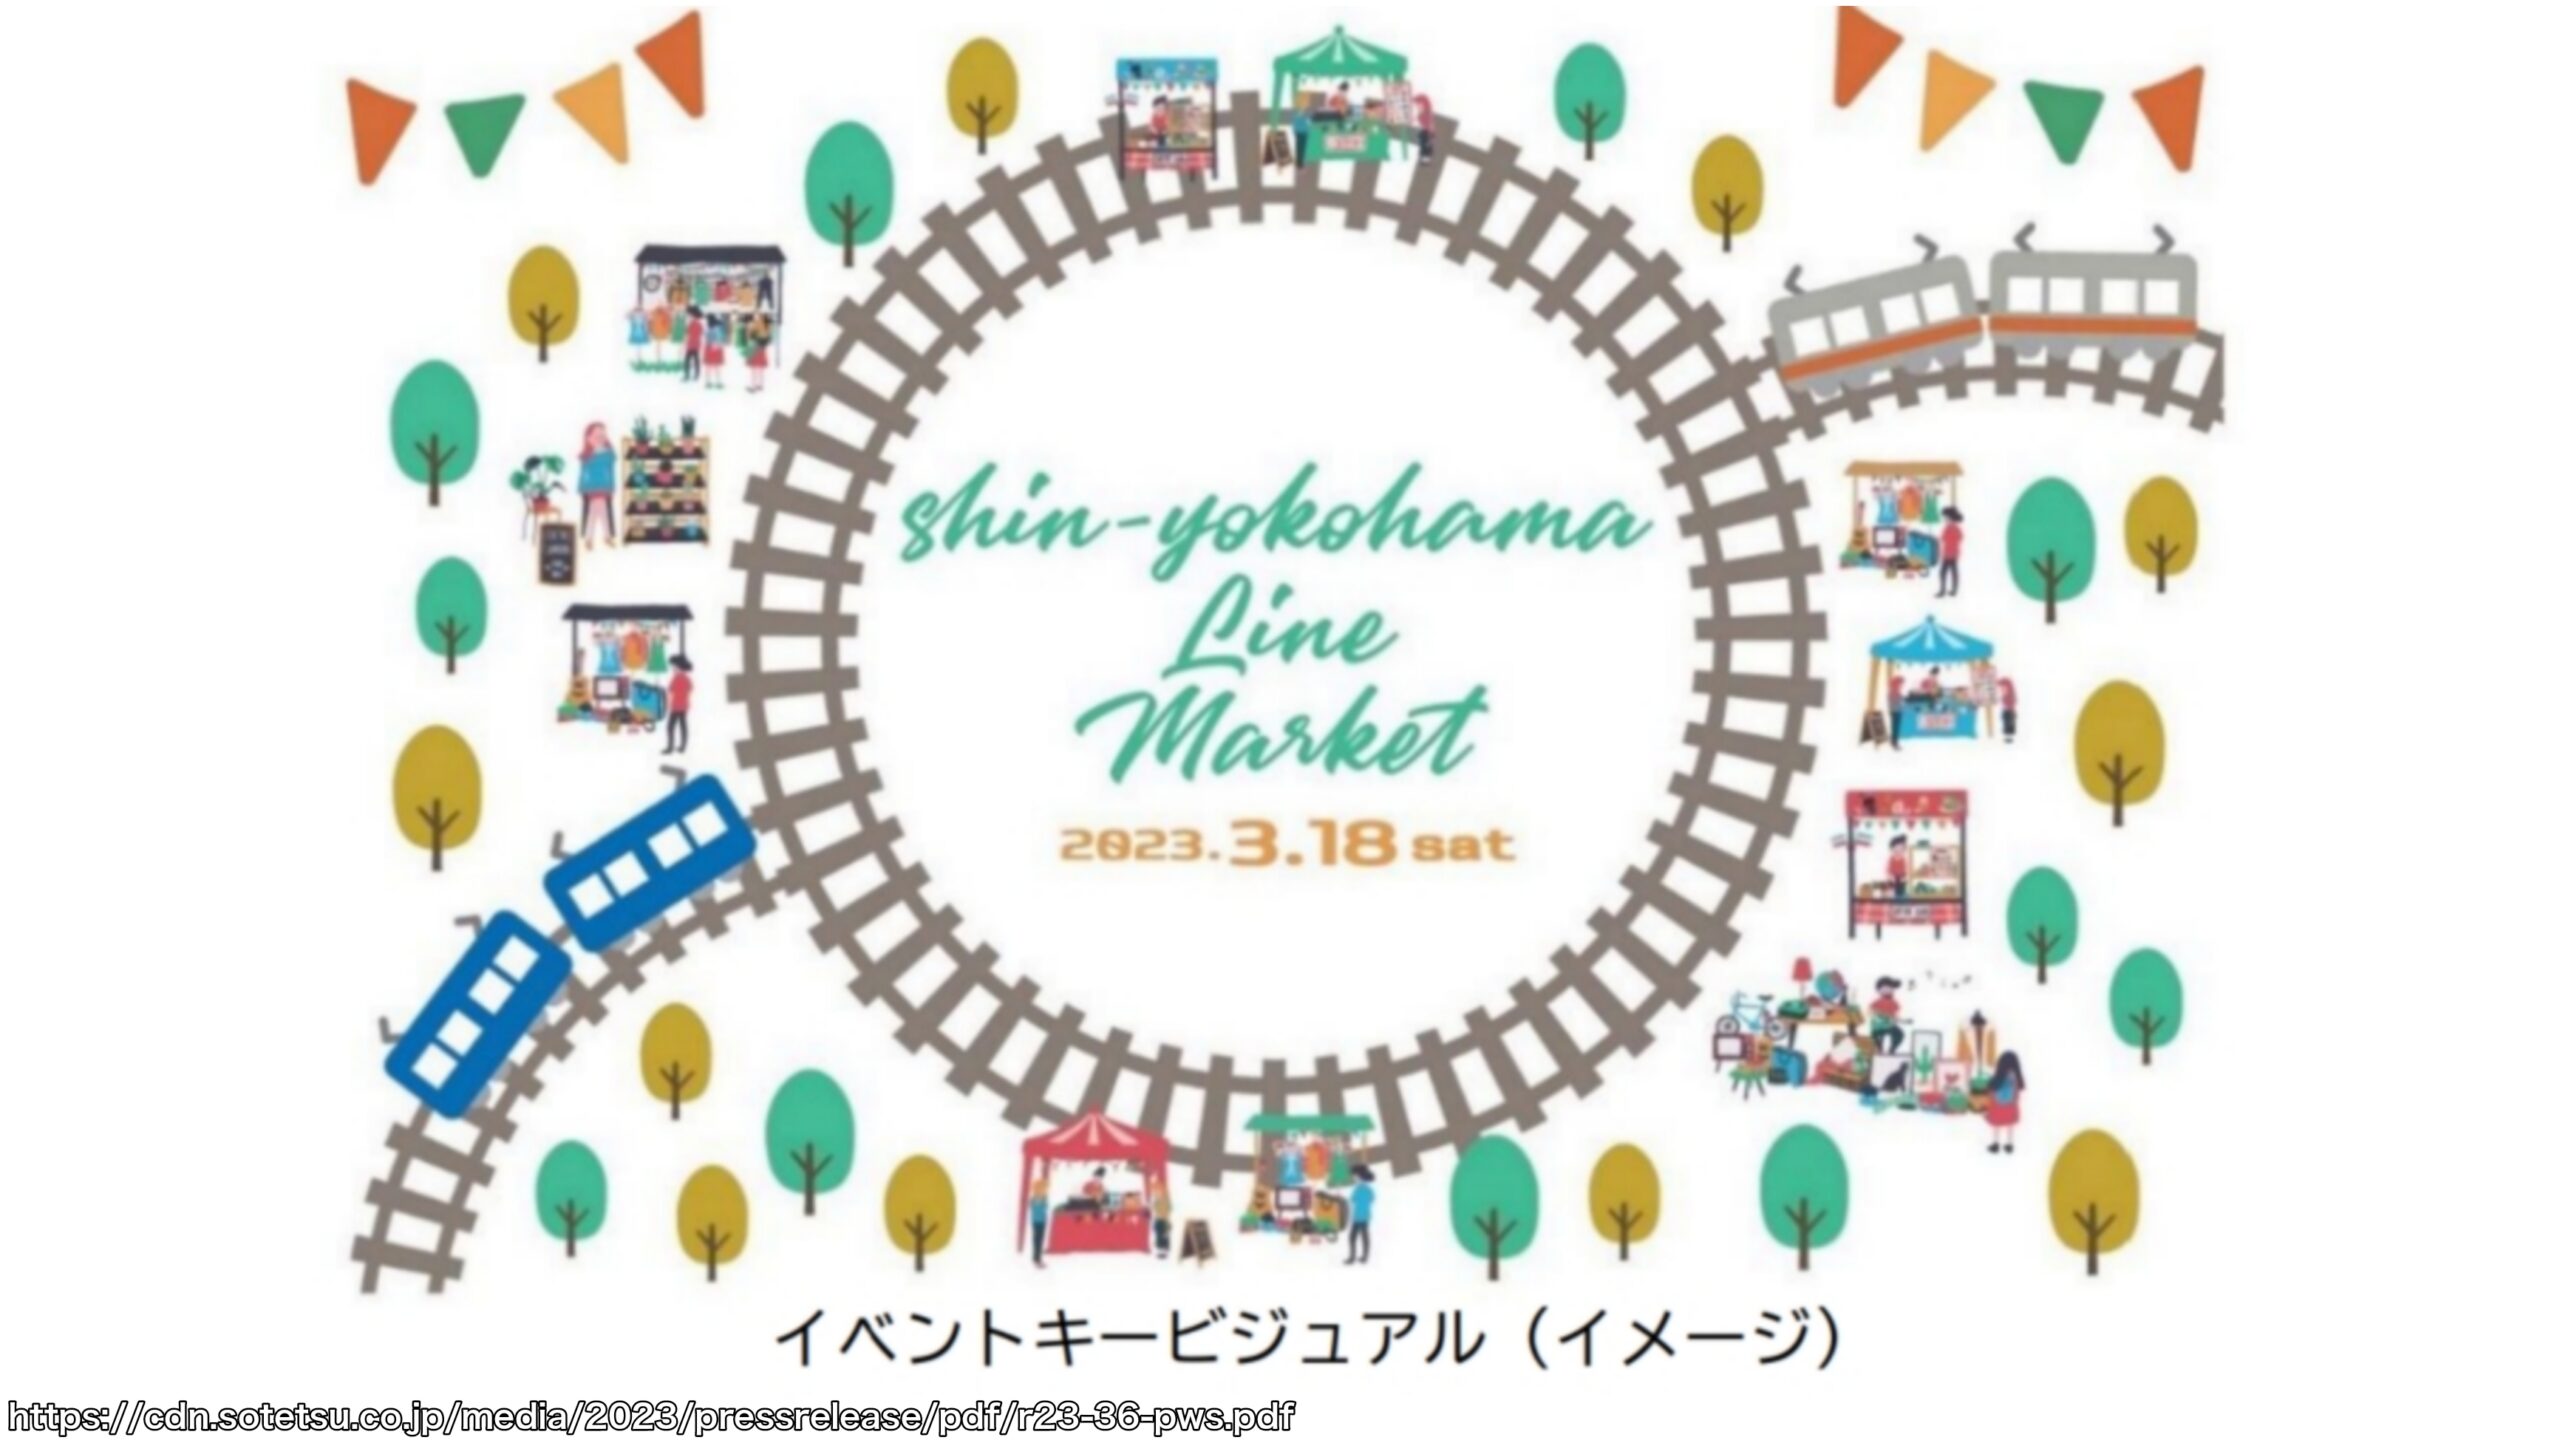 【相鉄・東急新横浜線開業記念】オープニングセレモニー&Shin-yokohama Line Market開催